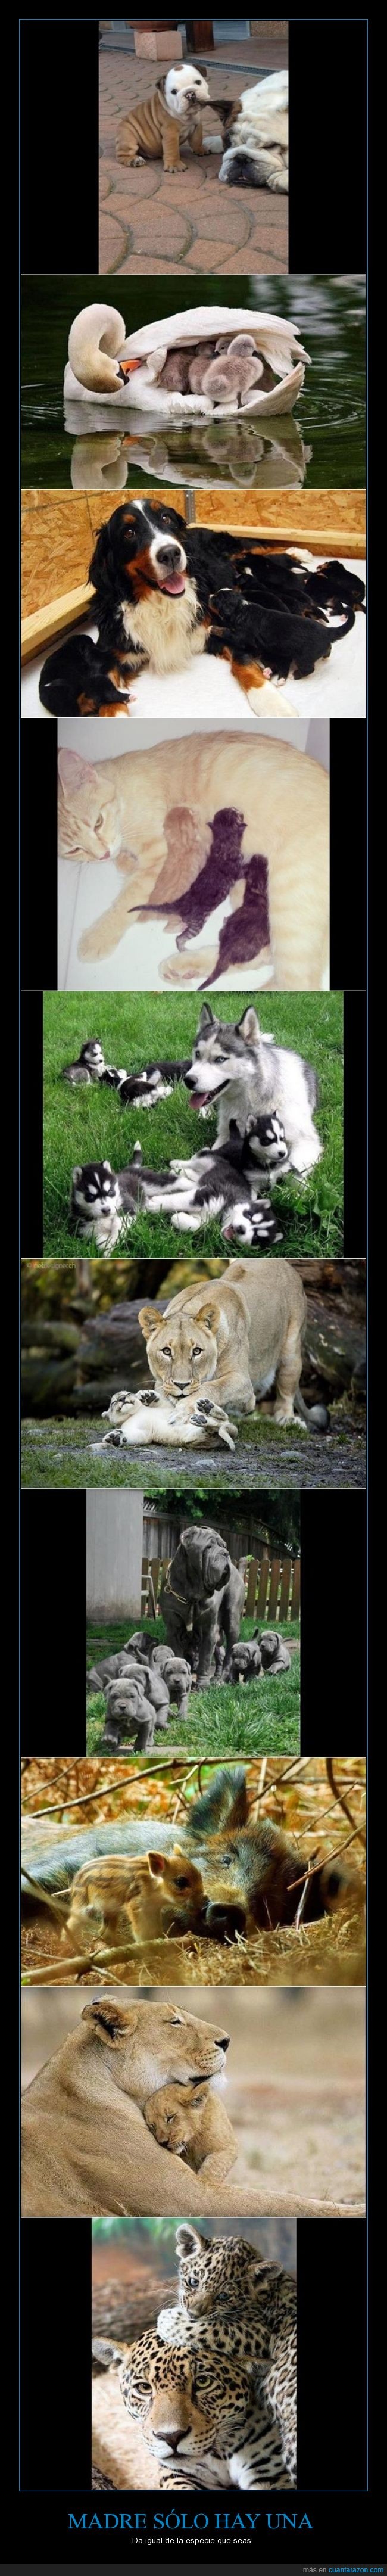 Reino animal,enternecedor,madres,cachorro,tiernos,leopardo,leona,jablí,perros,gatos,amor de la madre